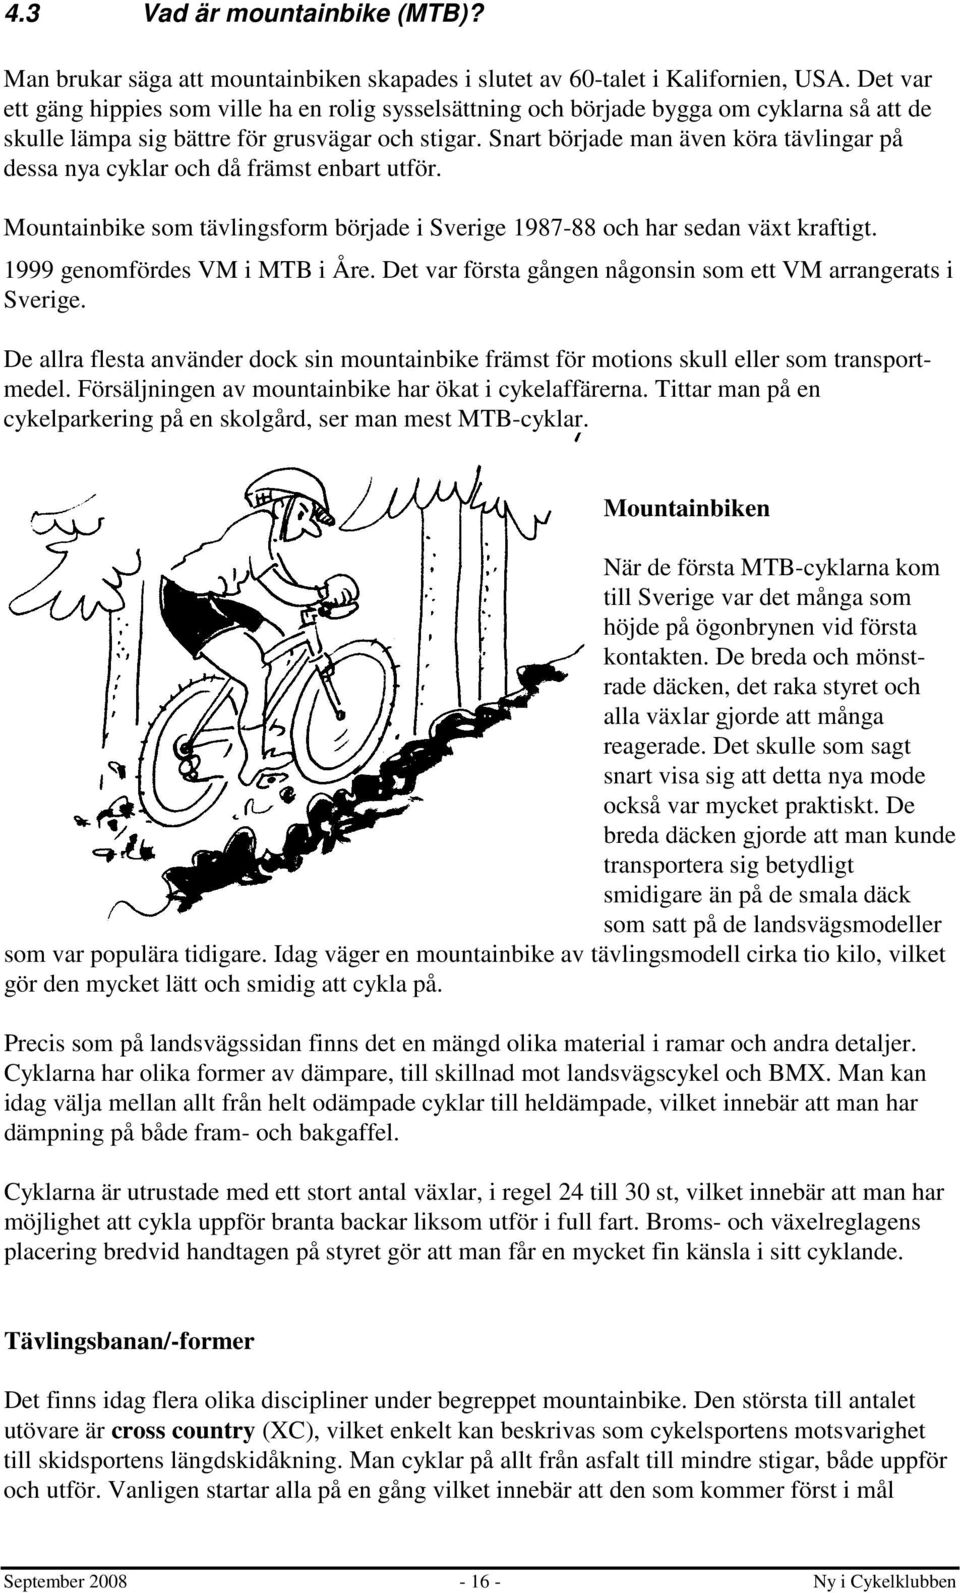 Snart började man även köra tävlingar på dessa nya cyklar och då främst enbart utför. Mountainbike som tävlingsform började i Sverige 1987-88 och har sedan växt kraftigt.